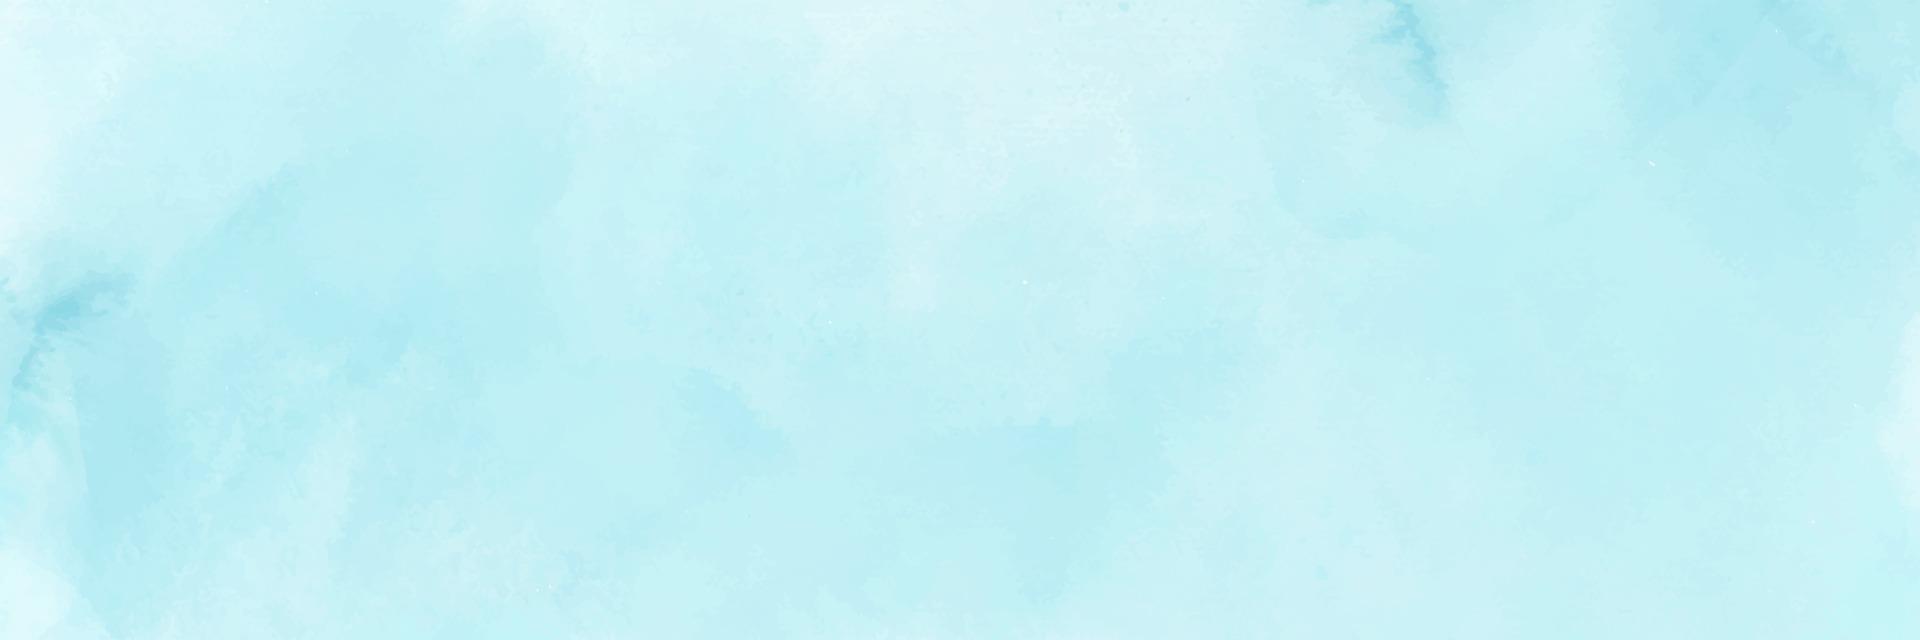 blaue Minze Aquarellpinsel malen Vektorhintergrund vektor